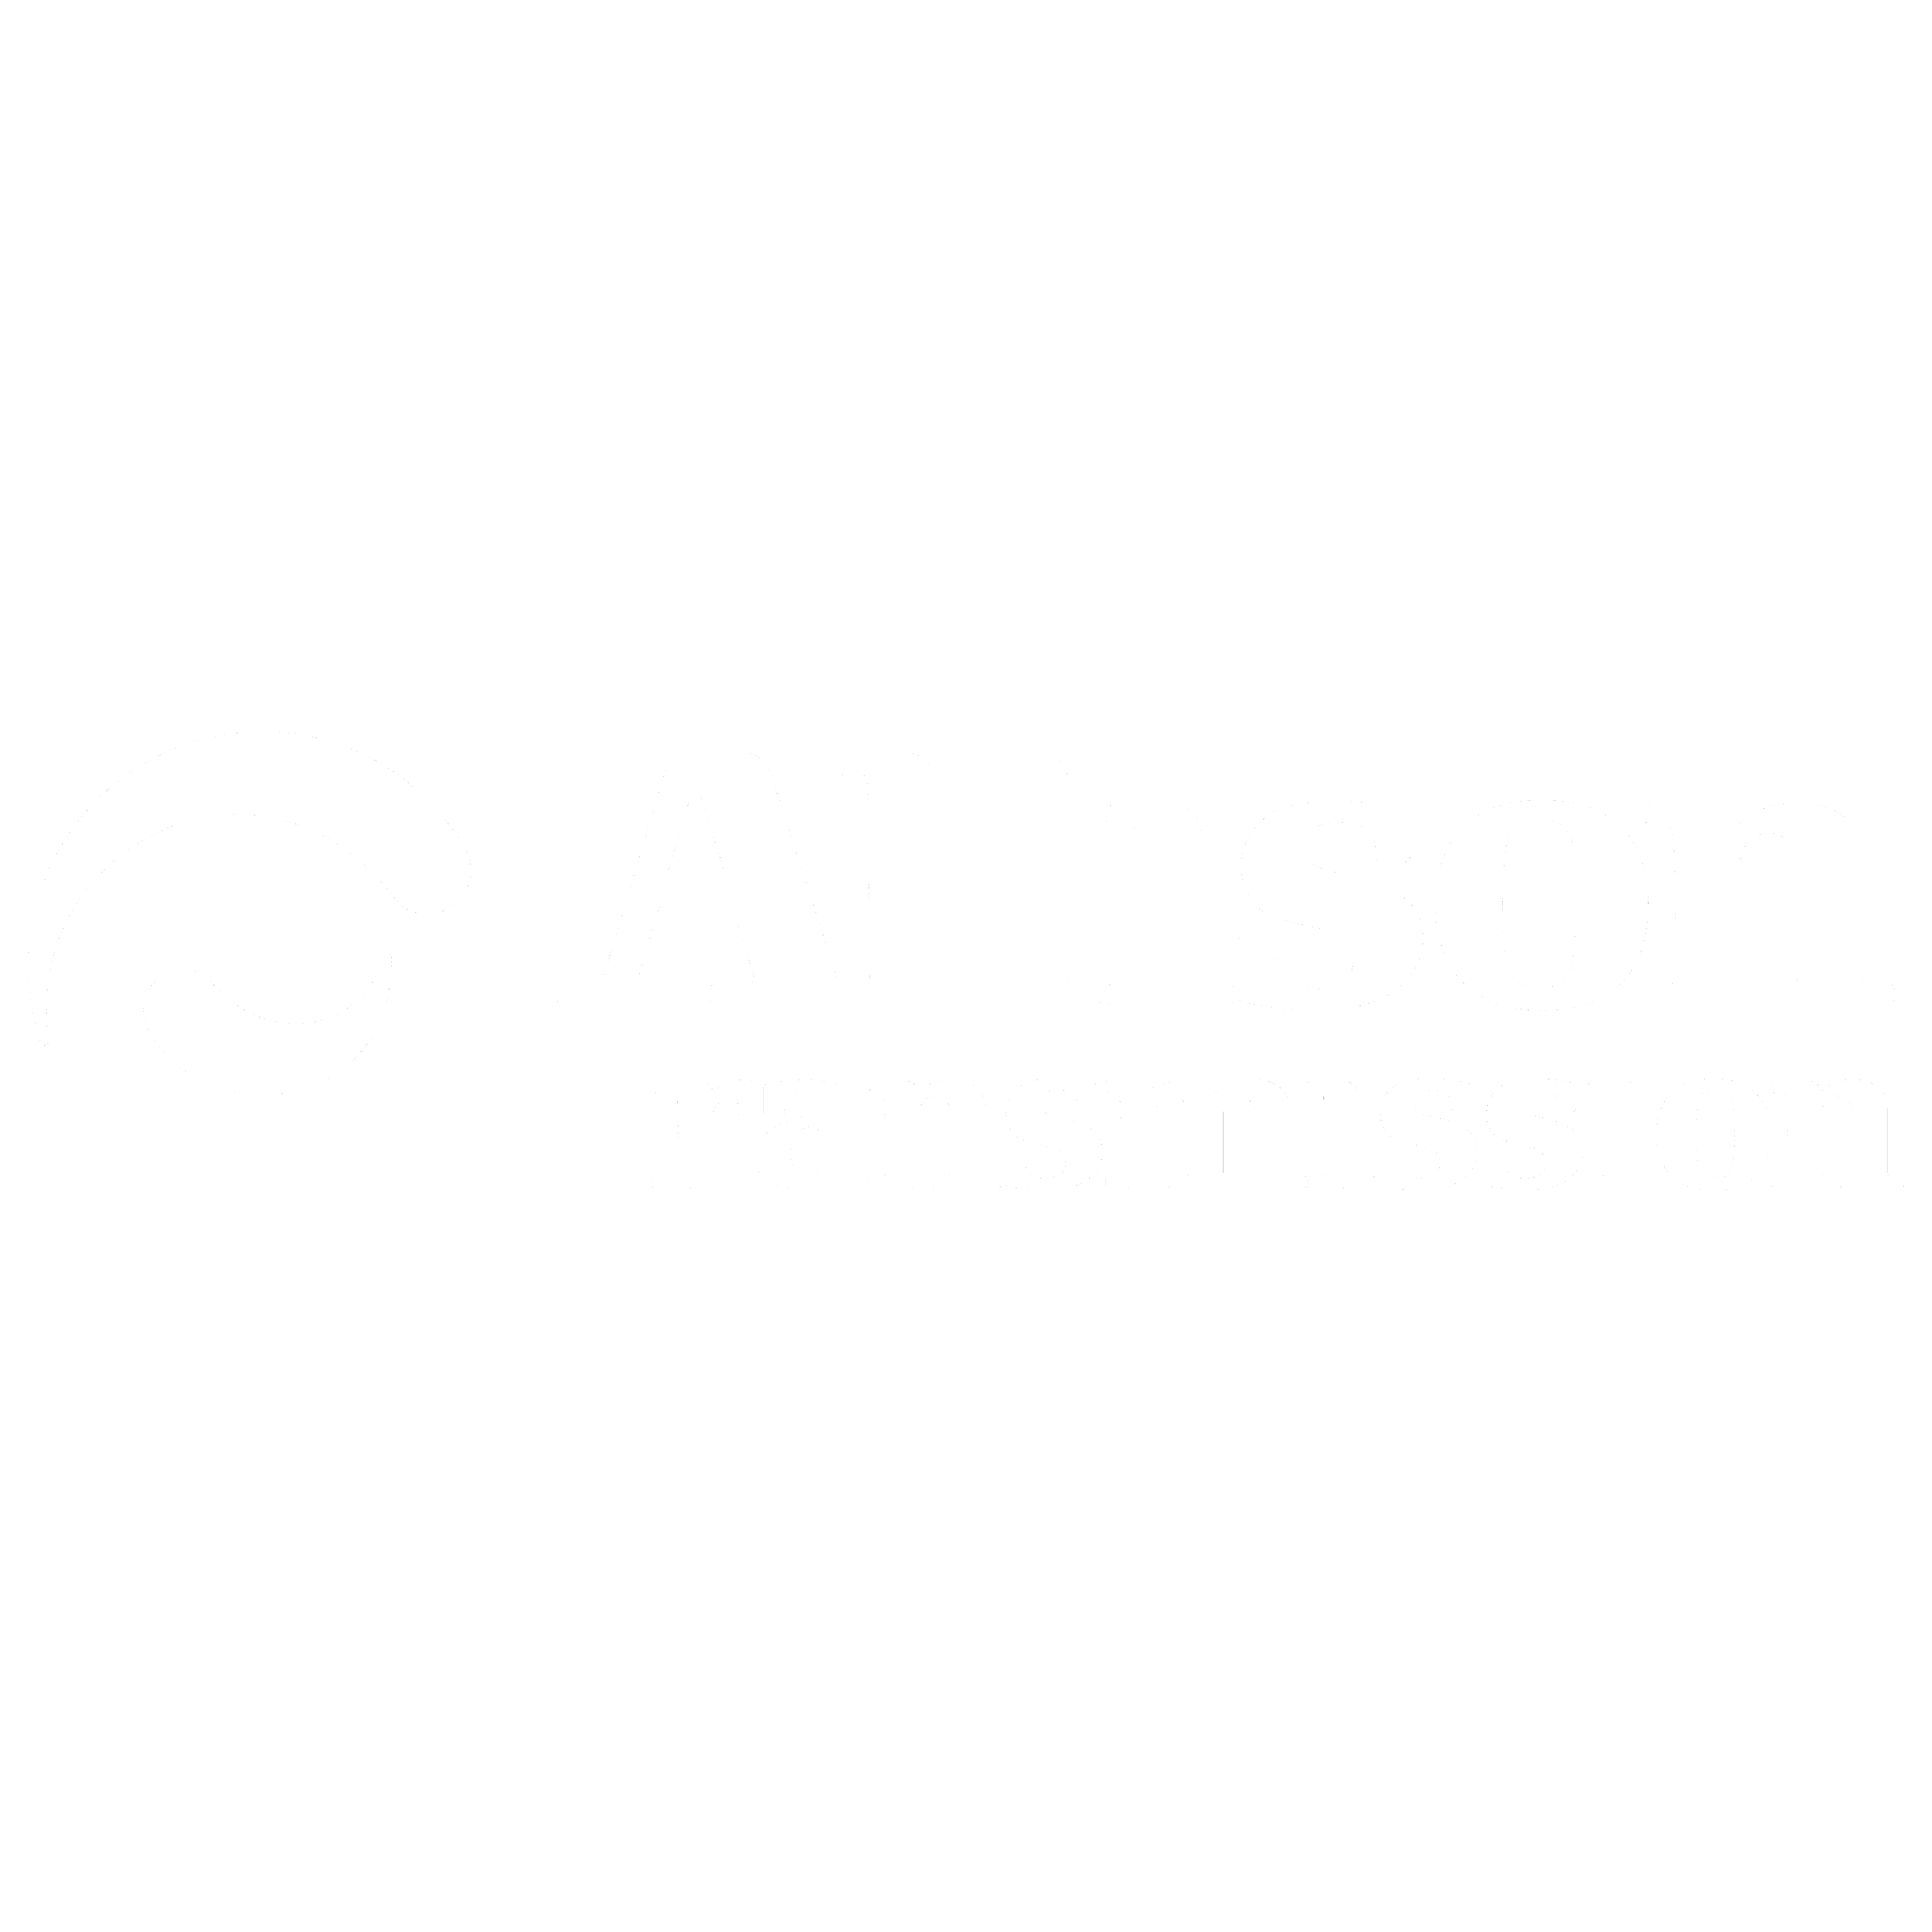 Allison Transmission Logo - Allison Transmission Logo PNG Transparent & SVG Vector